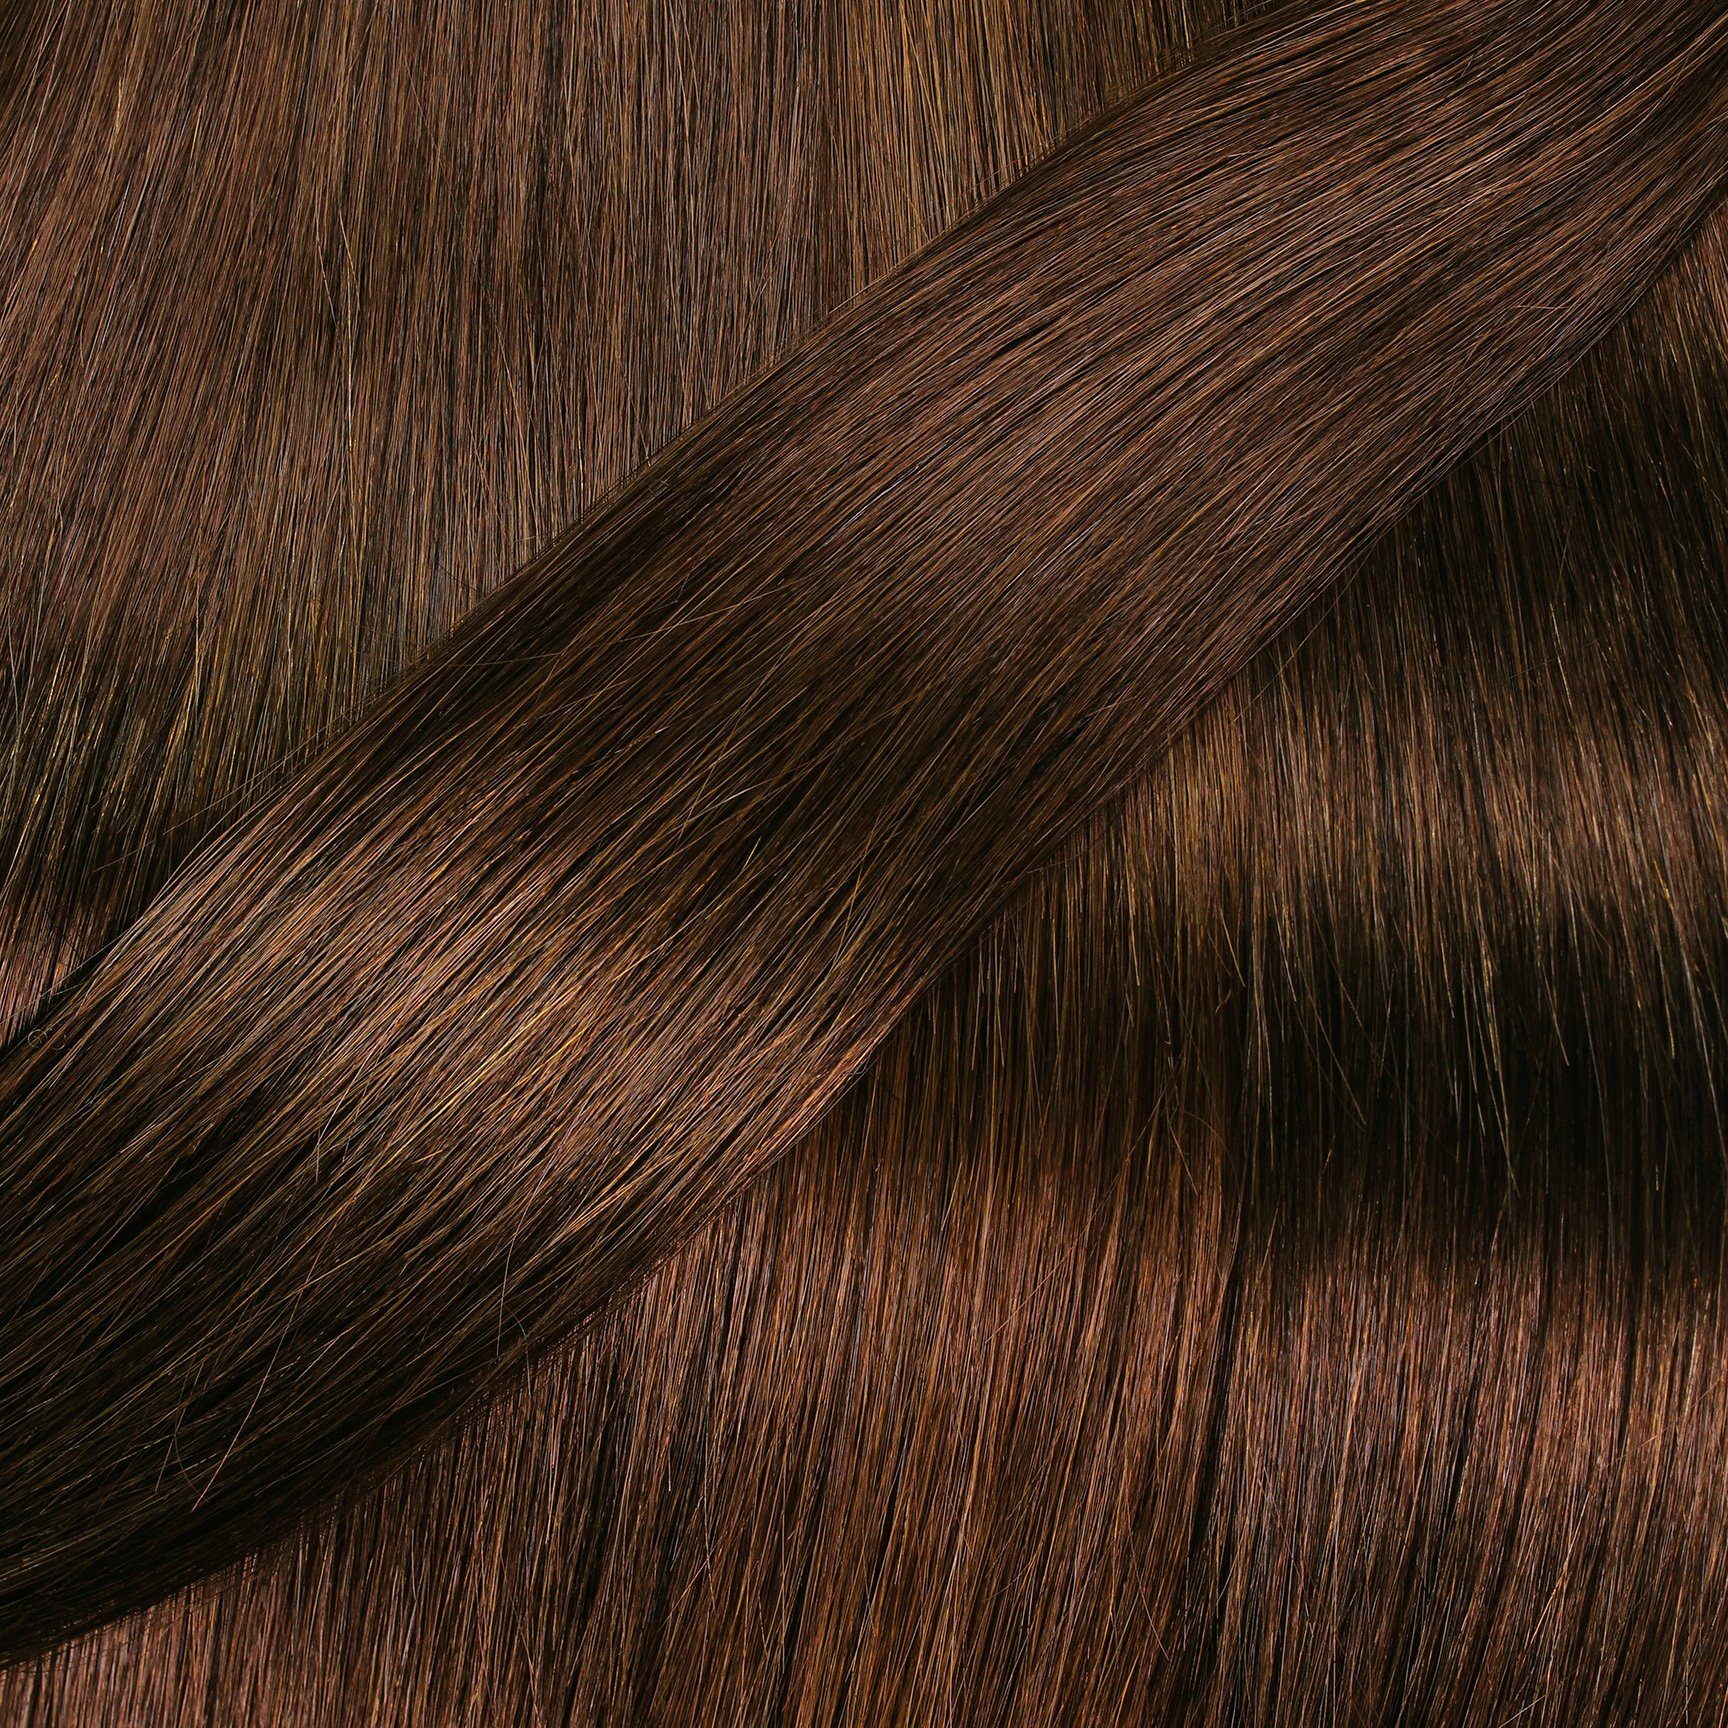 hair2heart Echthaar-Extension glatt Tape Dunkelblond #6/3 Extensions 40cm Gold